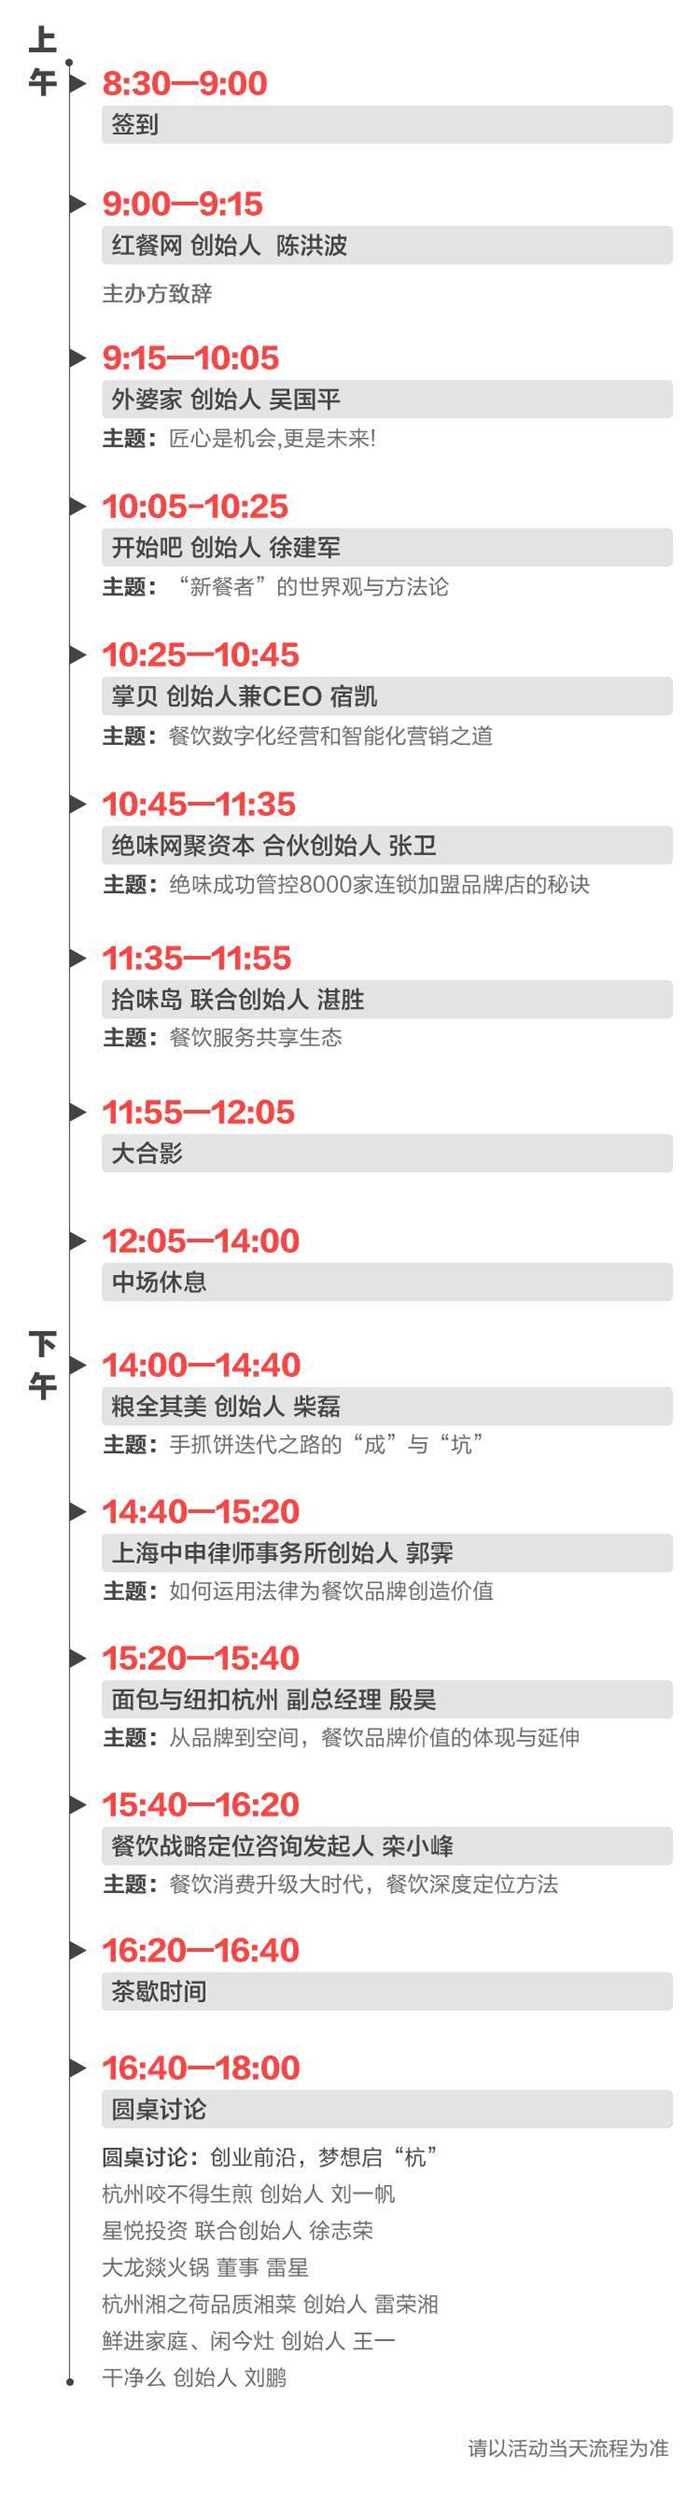 杭州站-微信文章流程 拷贝.jpg